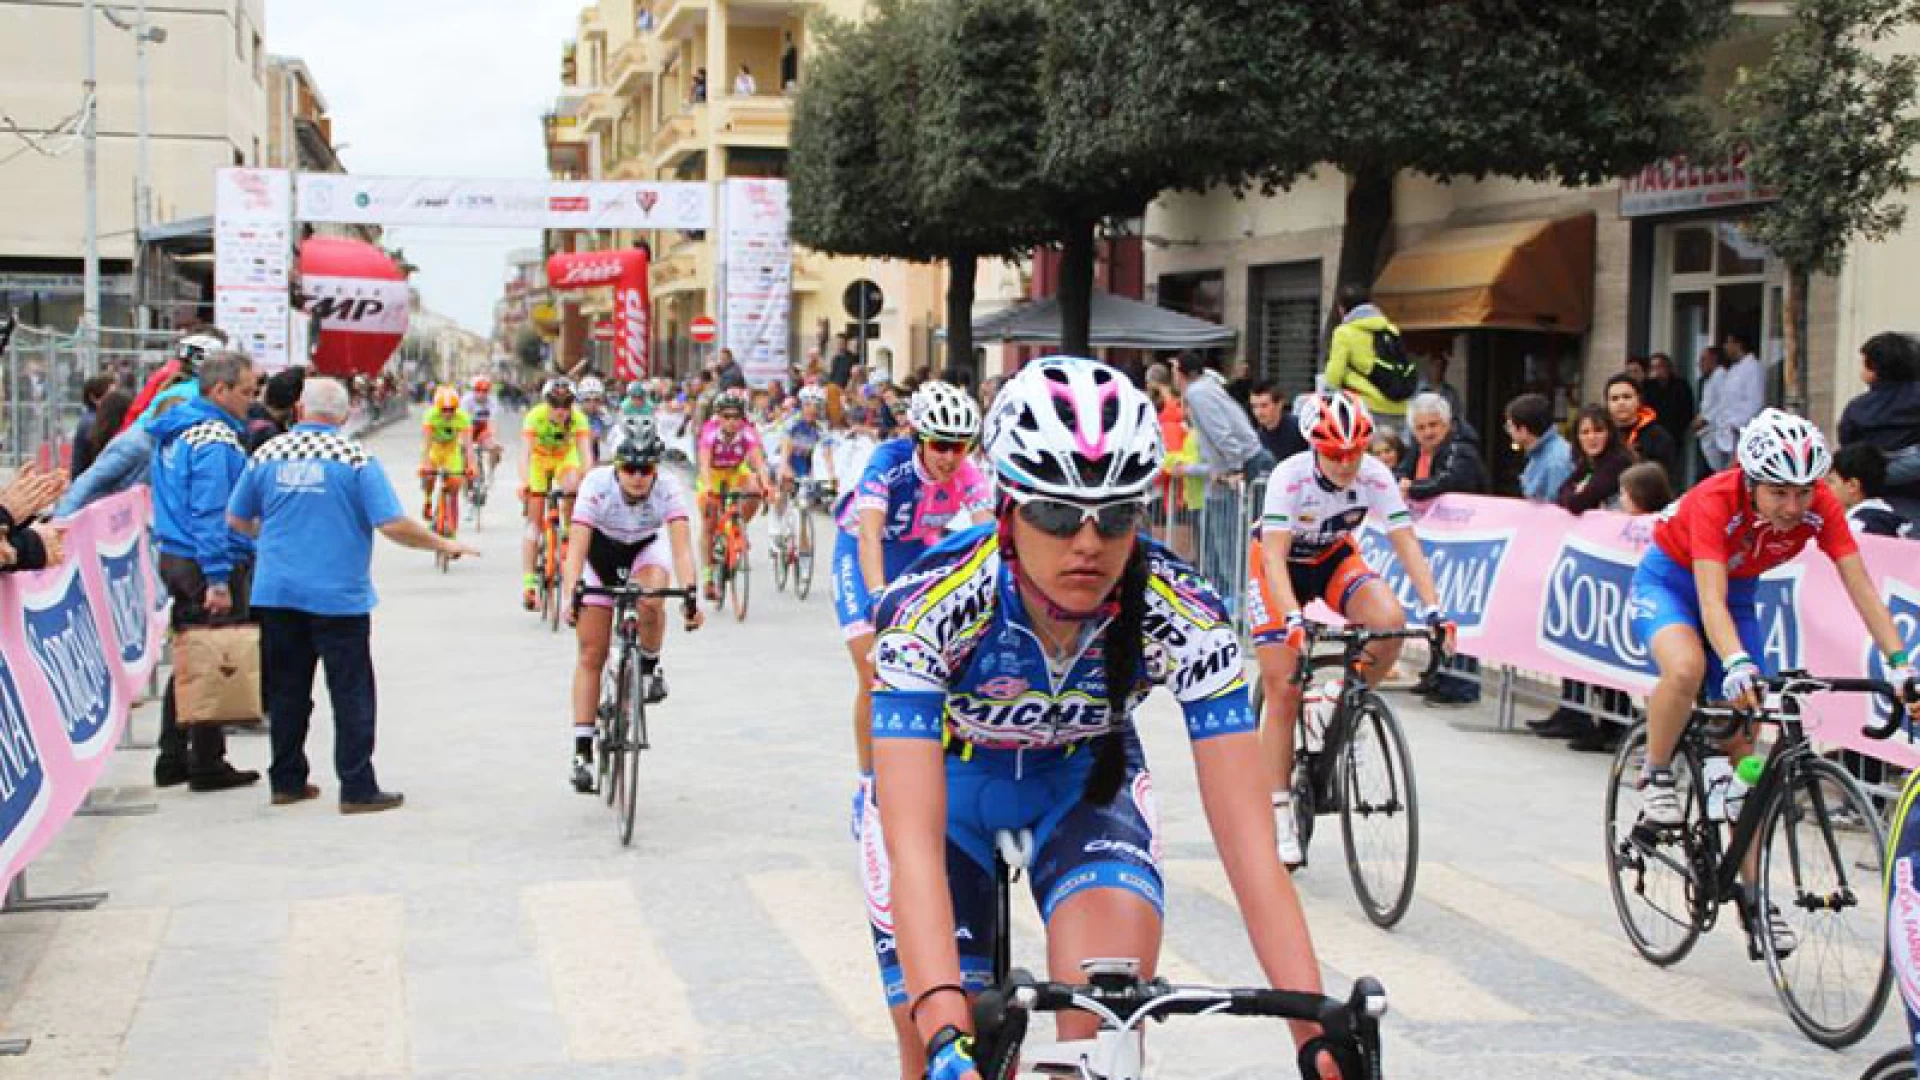 Ciclismo: “Il mio primo giro a tappe è stata una grande emozione”. Le impressioni di Manuela De Iuliis dopo il giro della Campania femminile.